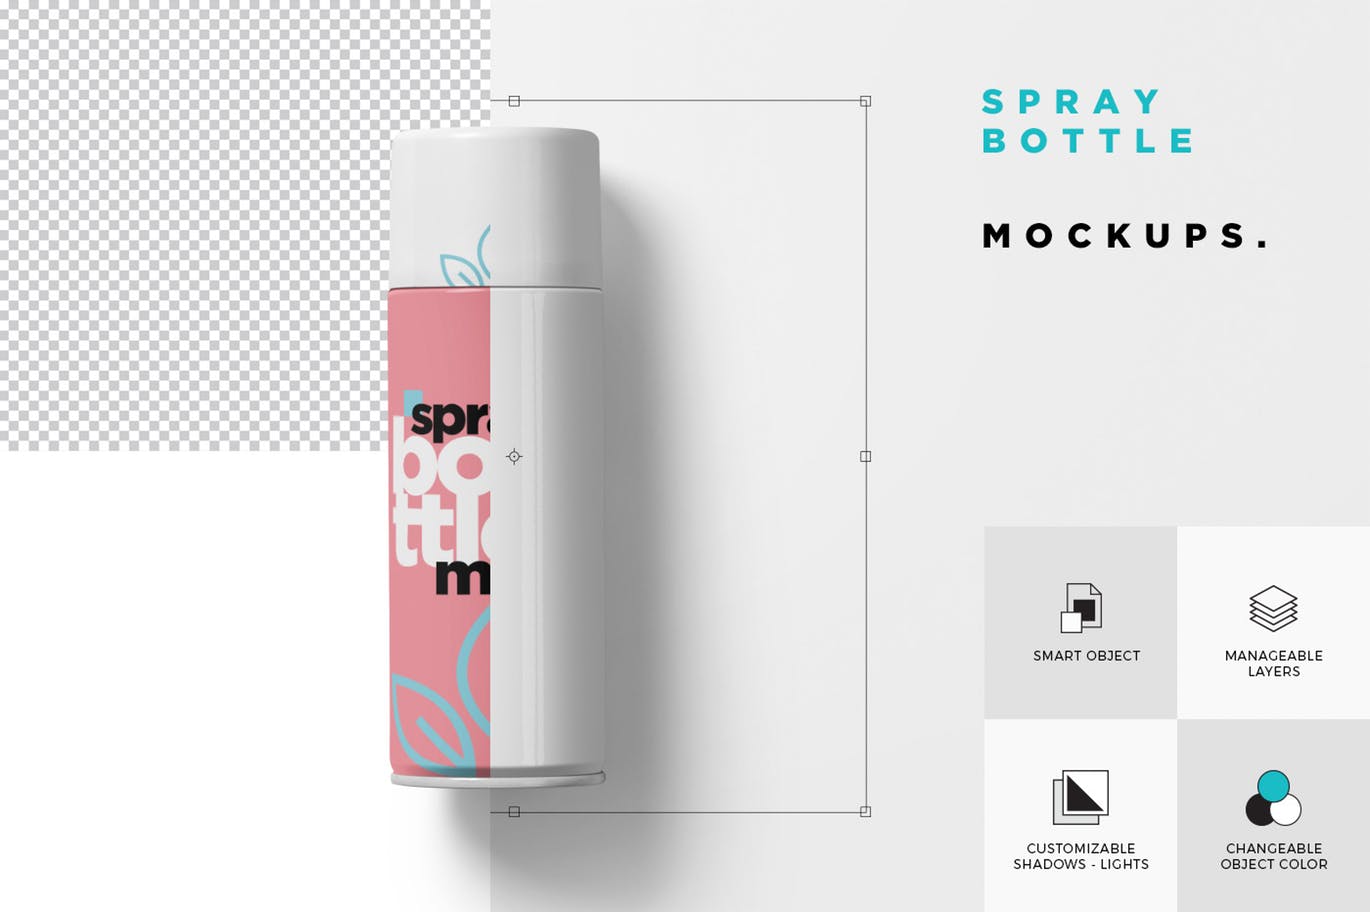 发胶/保湿喷雾瓶外观设计样机模板 Spray Bottle Mockups插图(4)